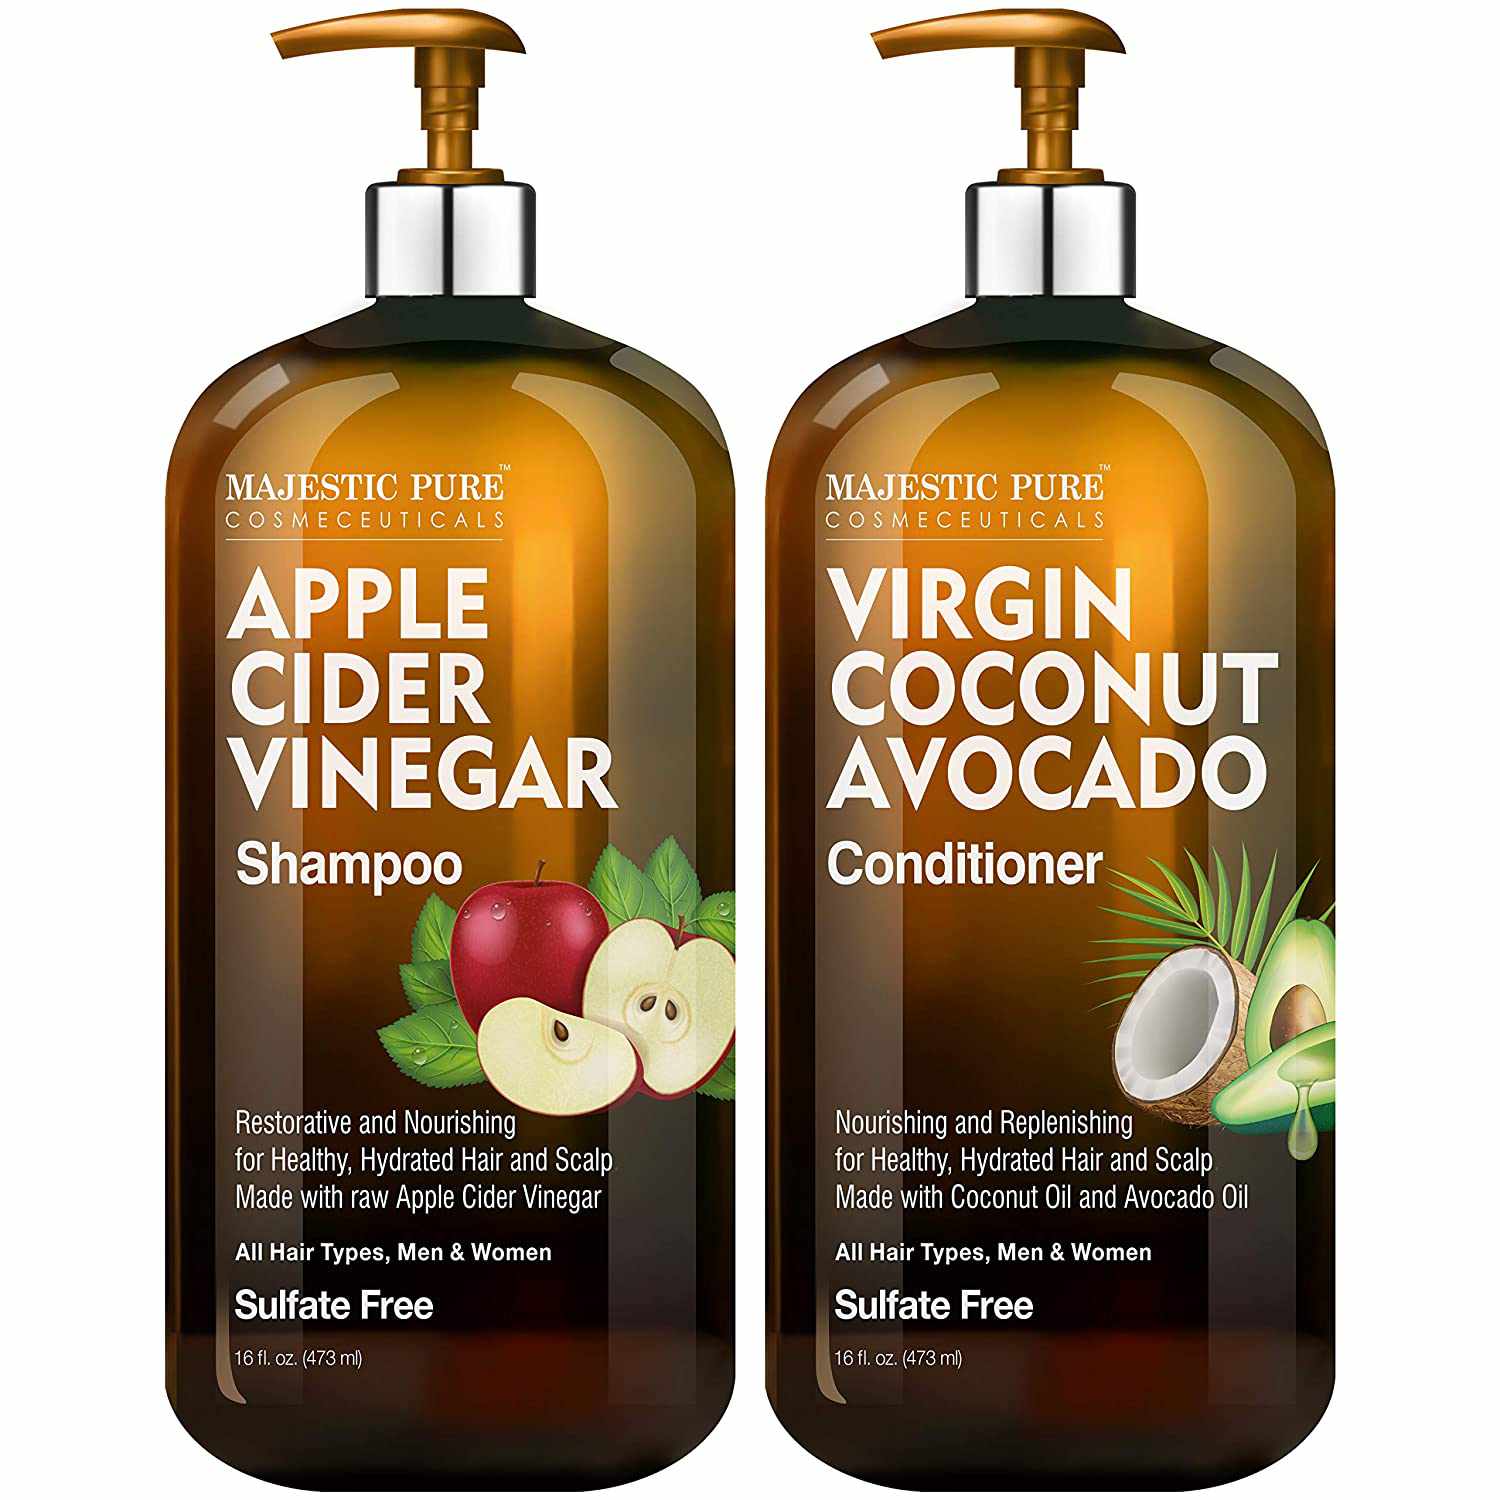 磅礴纯苹果醋洗发水和鳄梨椰子护发素套装